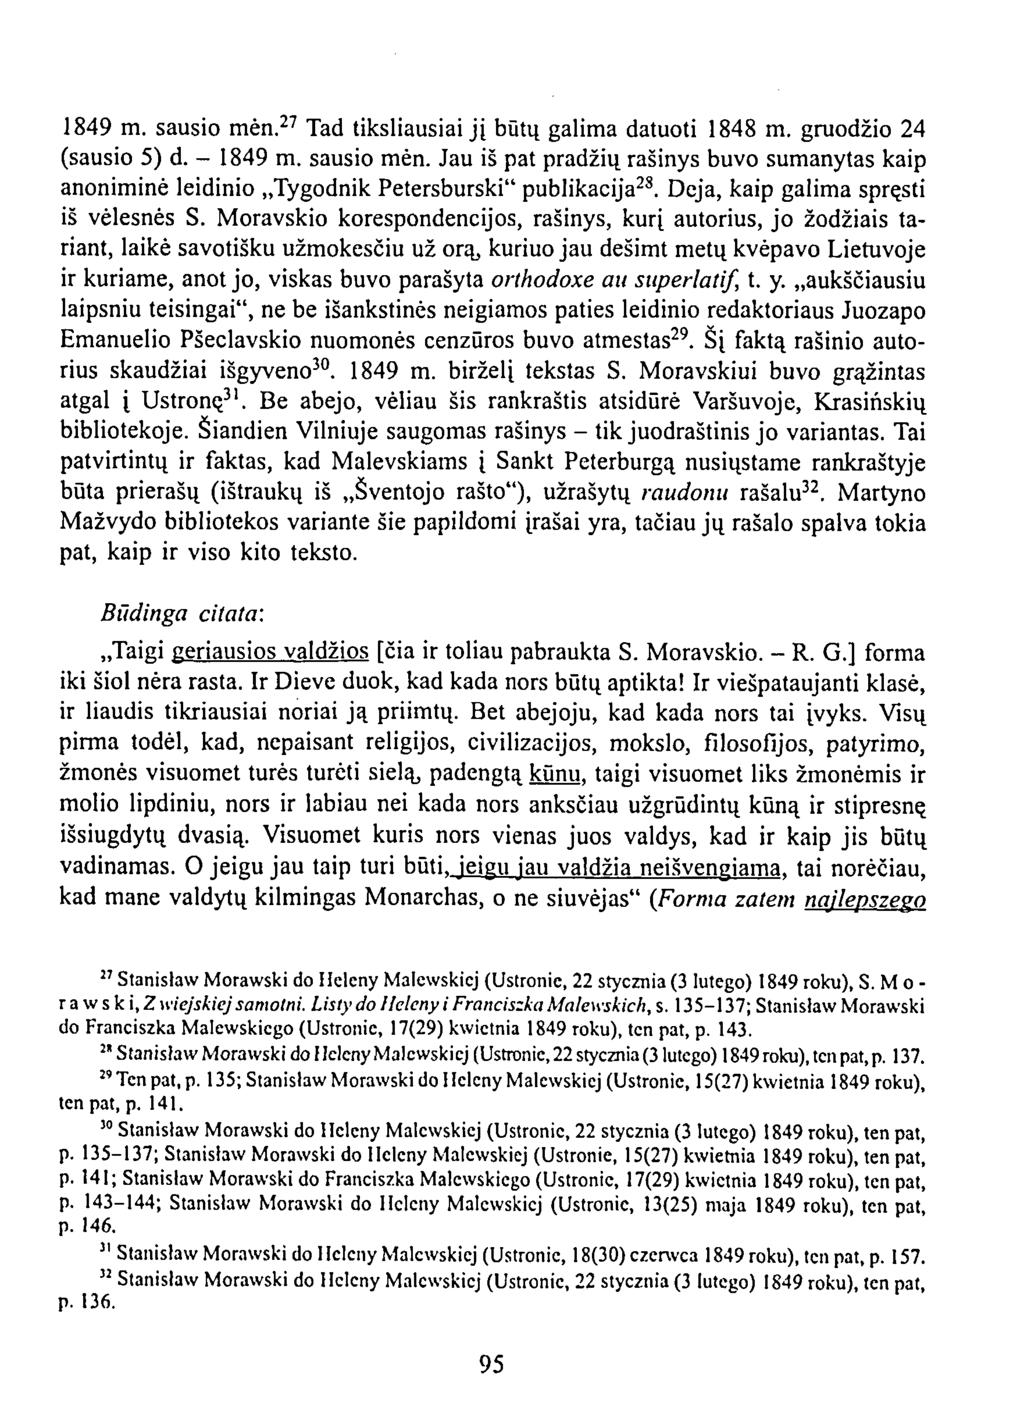 1849 m. sausio mėn. 27 Tad tiksliausiai jį būtų galima datuoti 1848 m. gruodžio 24 (sausio 5) d. - 1849 m. sausio mėn. Jau iš pat pradžių rašinys buvo sumanytas kaip anoniminė leidinio Tygodnik Petersburski" publikacija 28.